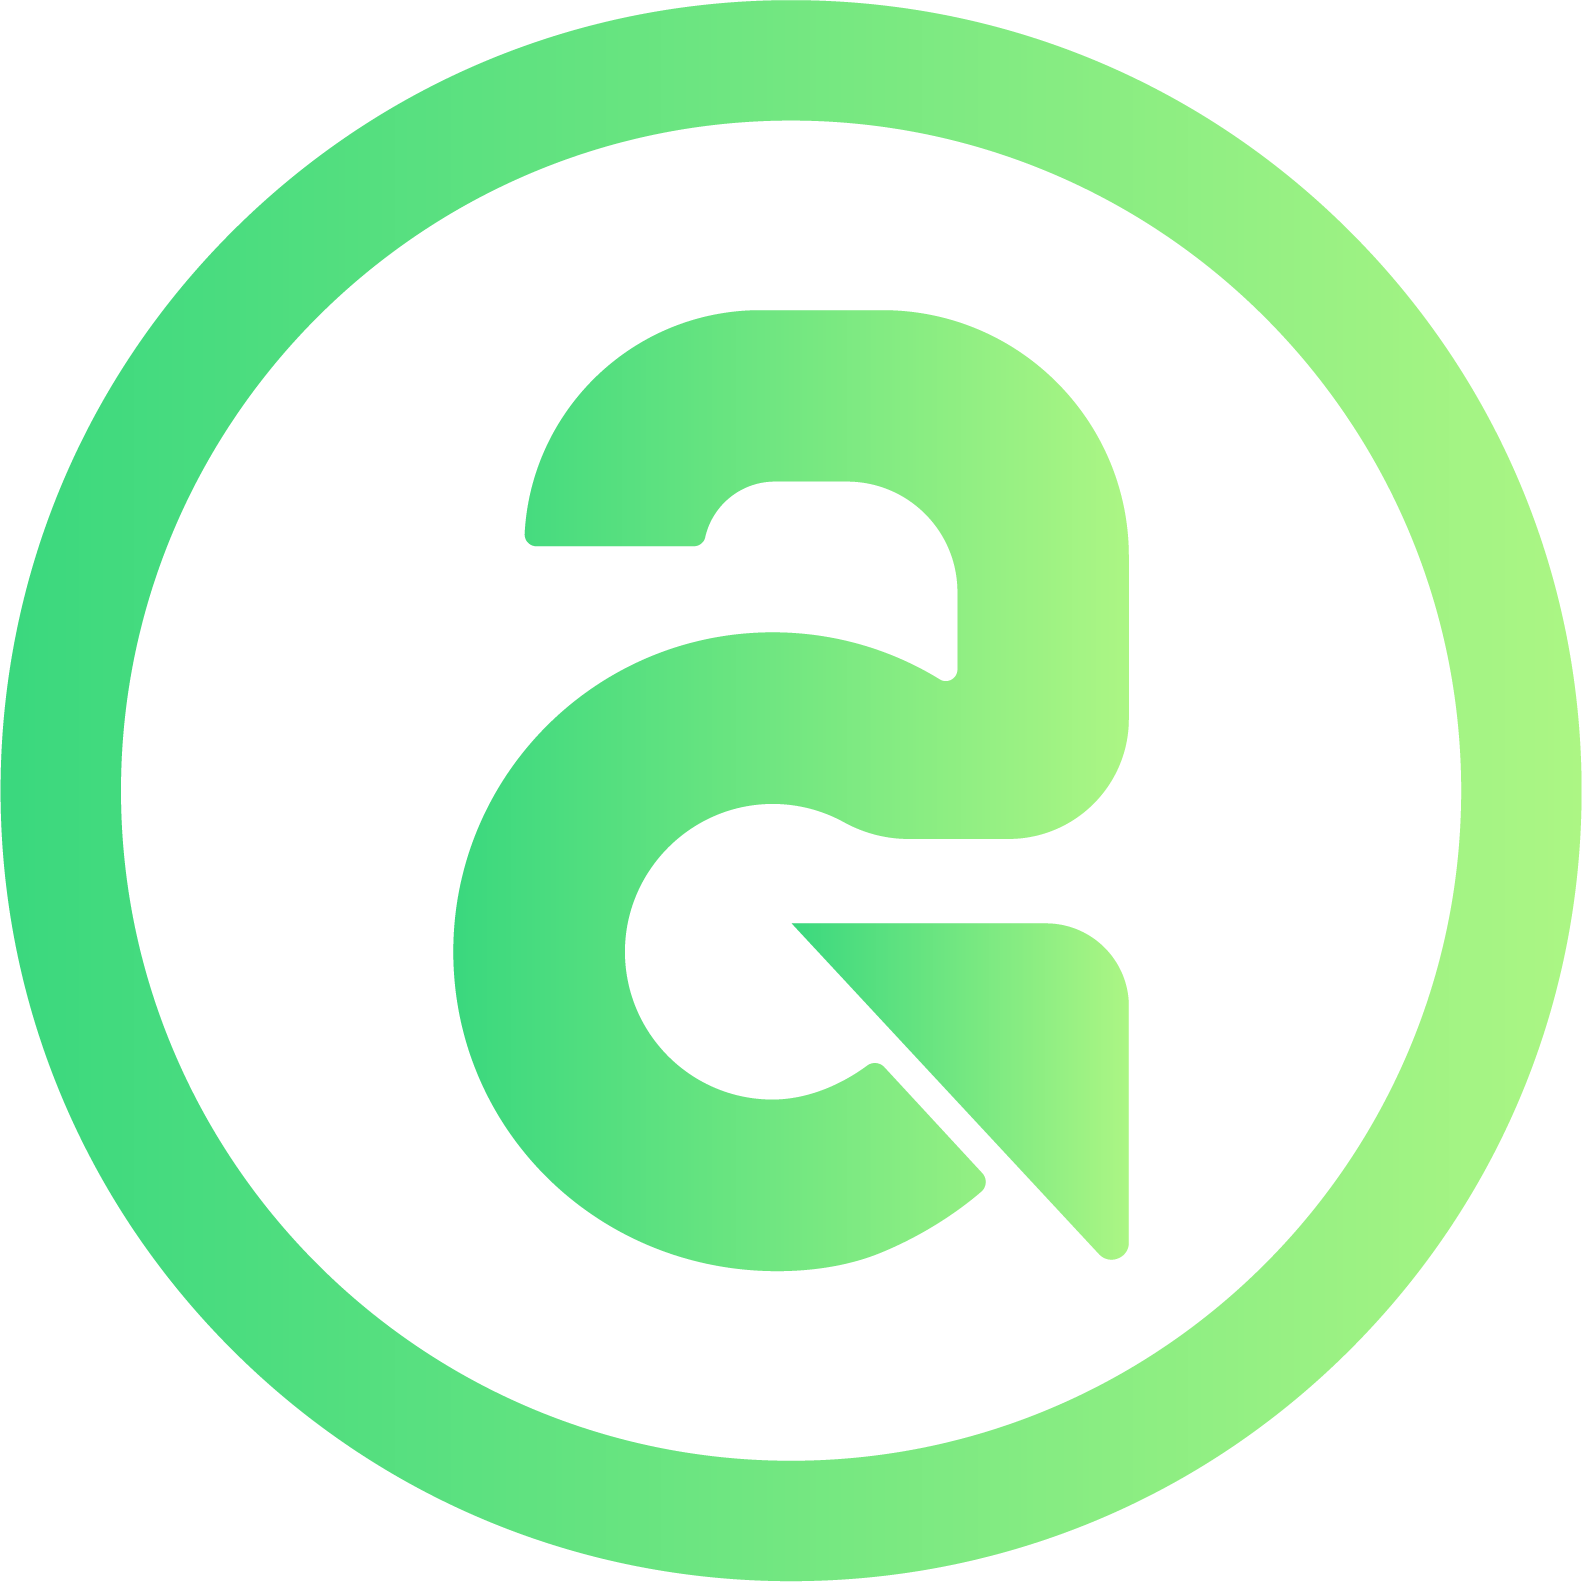 Logotipo do AutoGestor - Versões em degradê